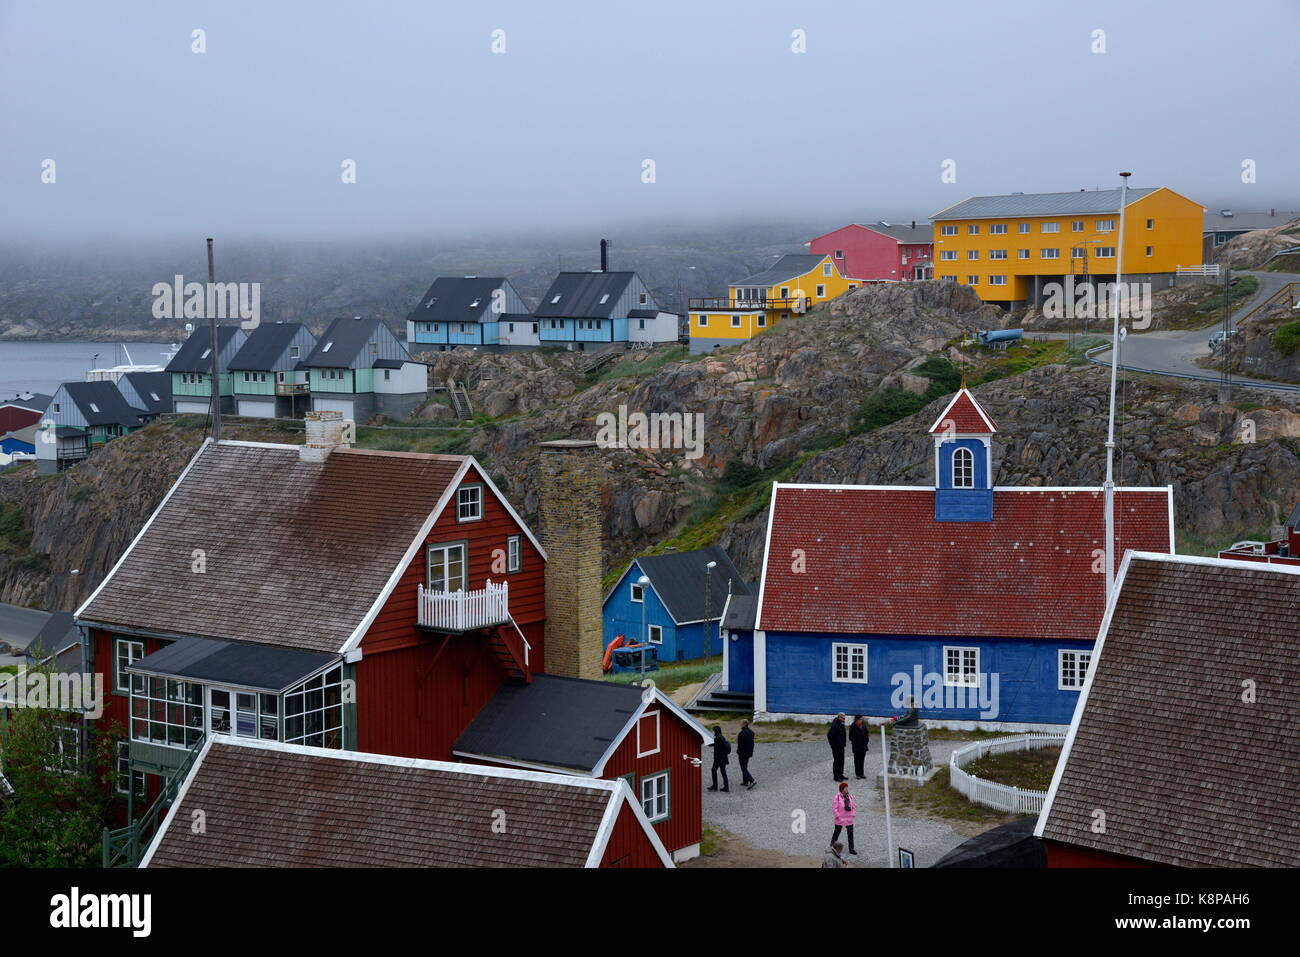 La ville de sisimut sur la côte ouest du Groenland. Elle est la deuxième plus grande du pays, située dans un paysage montagneux, à 75 kilomètres au nord du cercle polaire. prises 16.08.2017. photo : karlheinz schindler/dpa-zentralbild/zb | conditions dans le monde entier Banque D'Images